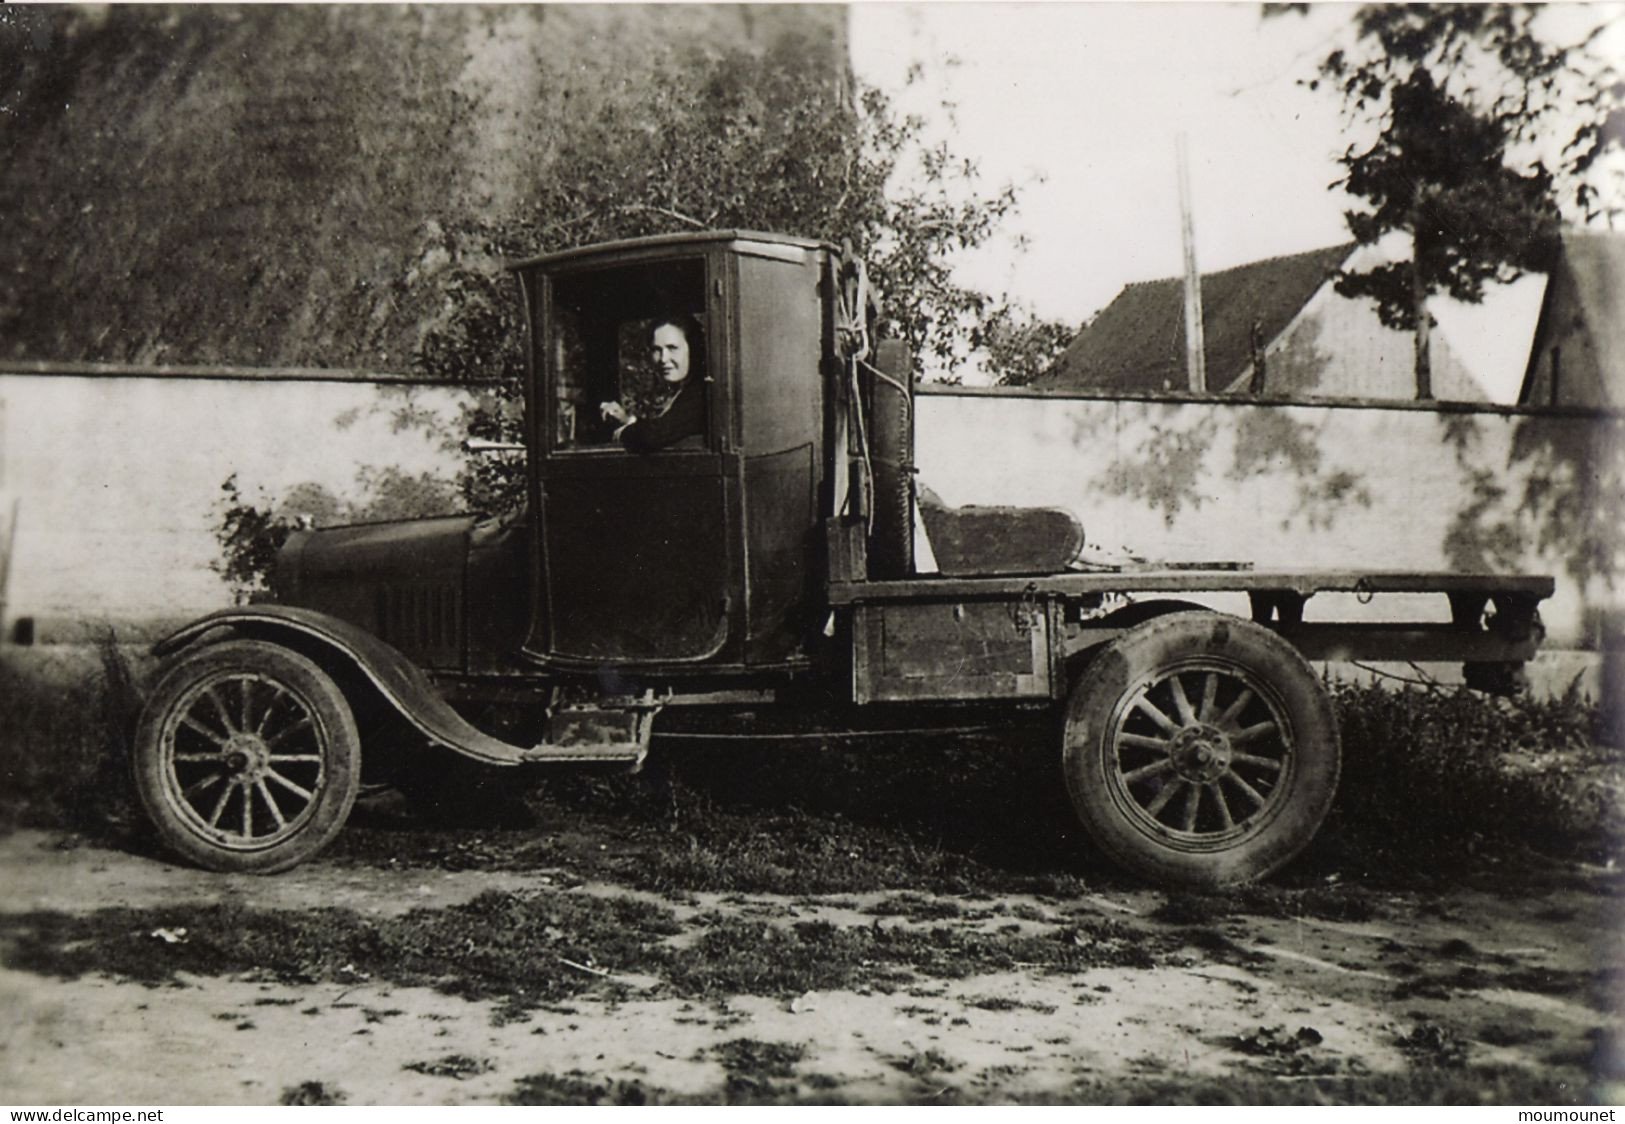 Saint-Rémy-sur-Avre. Automobile 1930 - 1940. Reproduction En 2003 - Europe